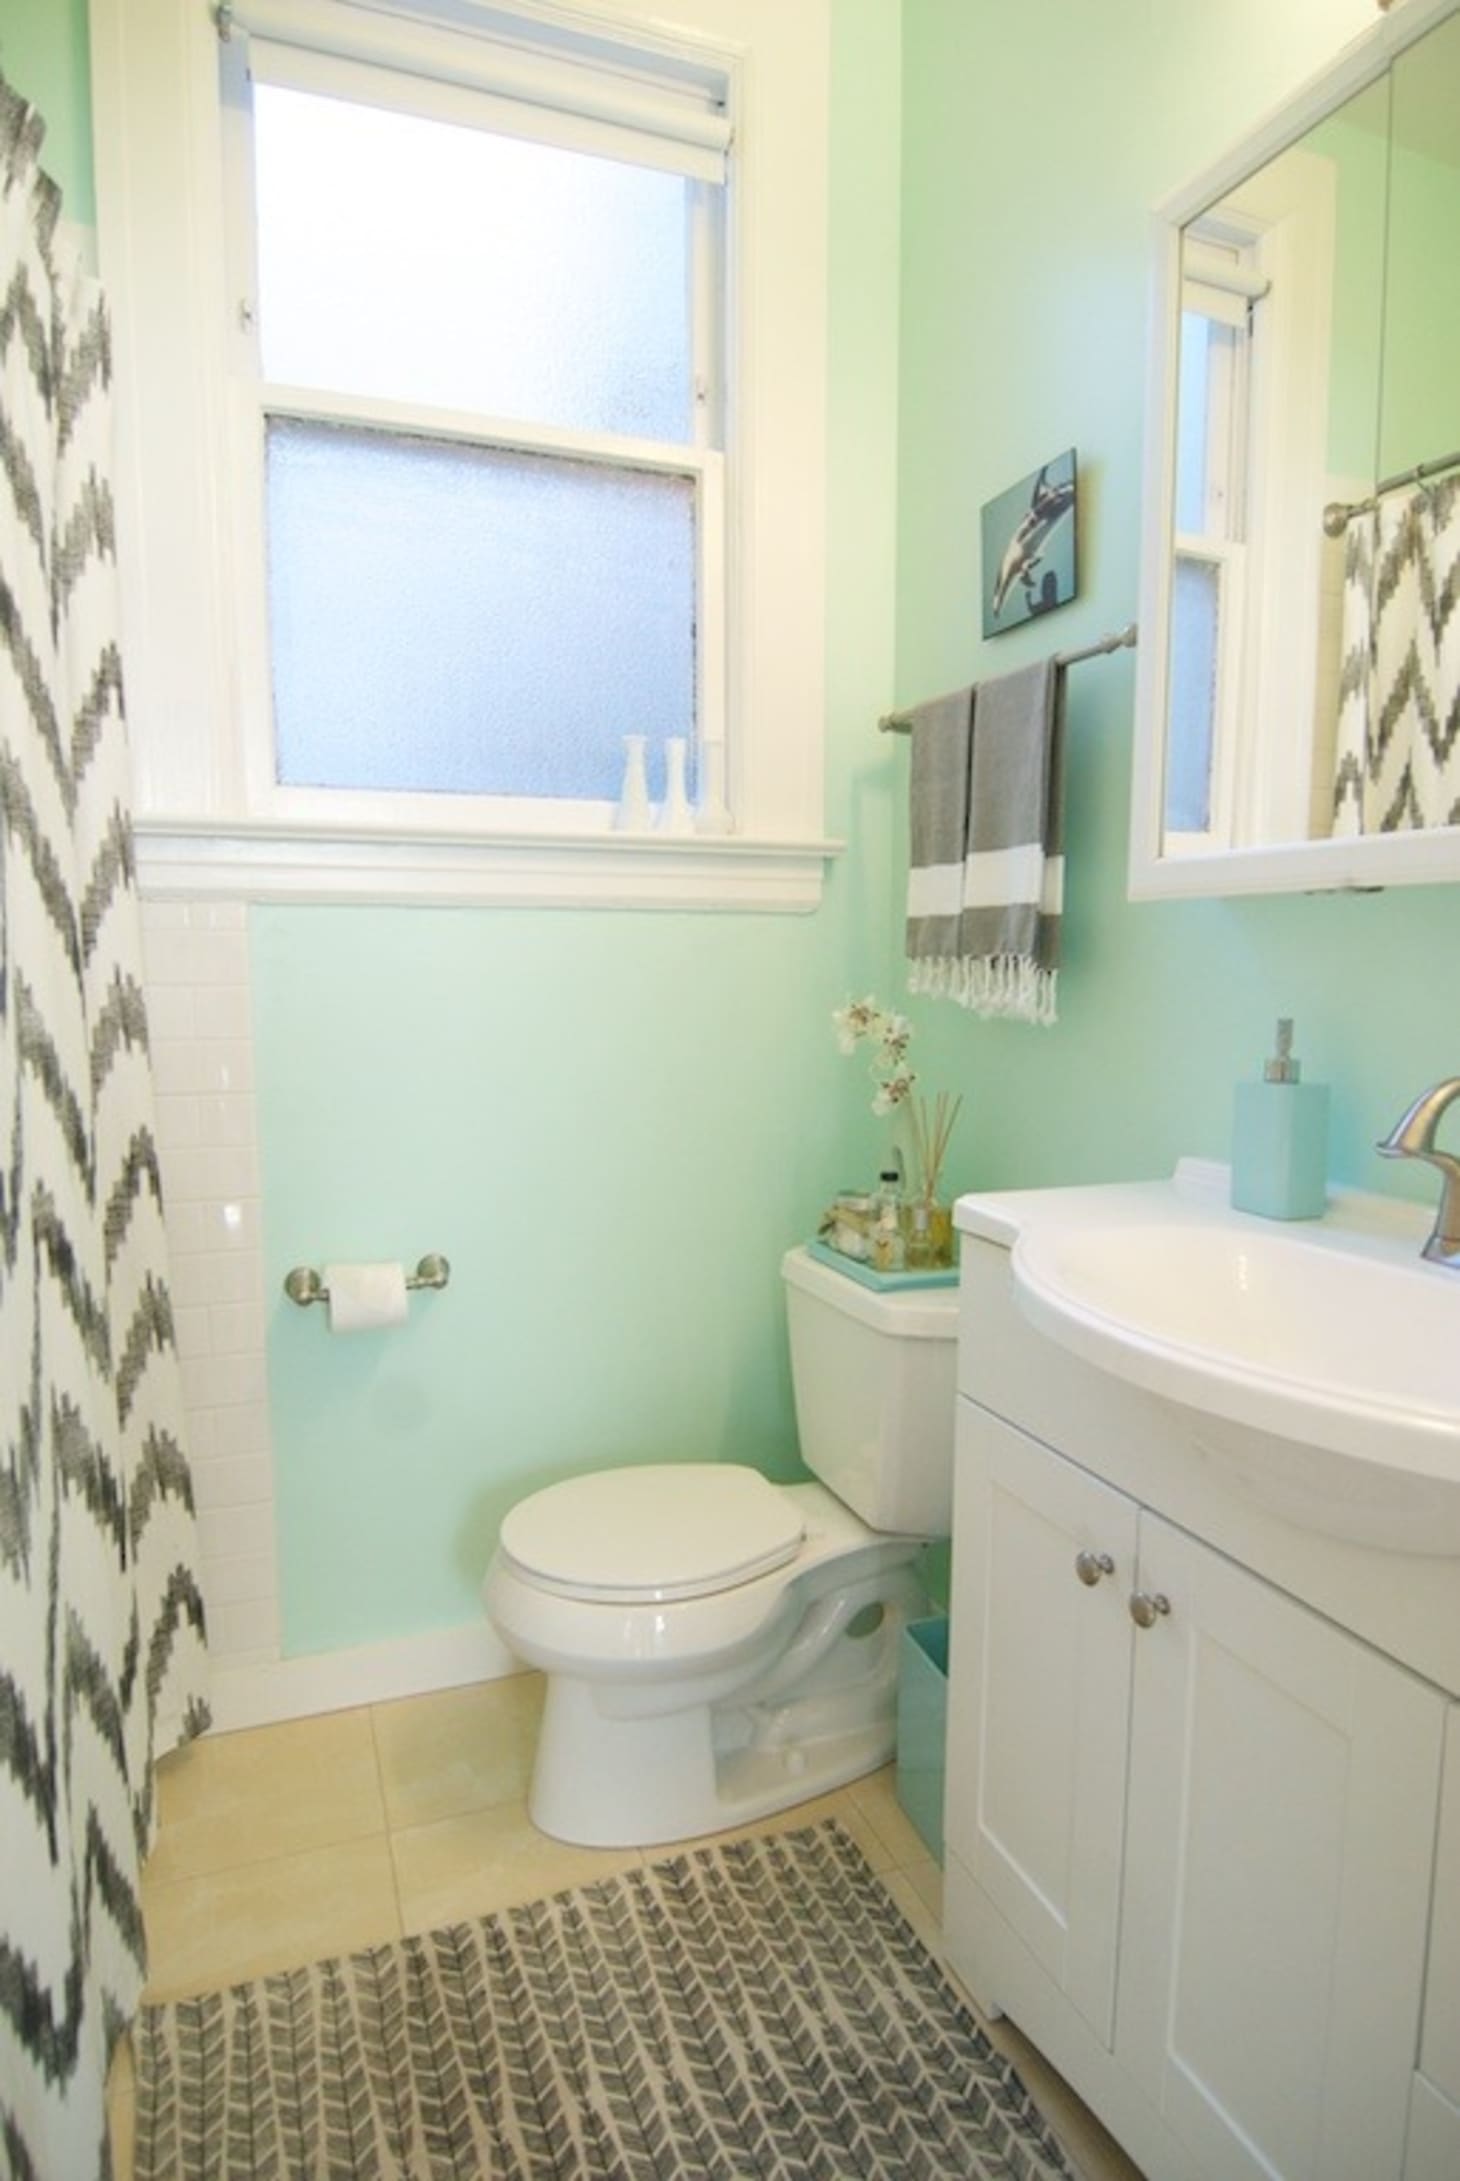 Ванная комната в мятном стиле